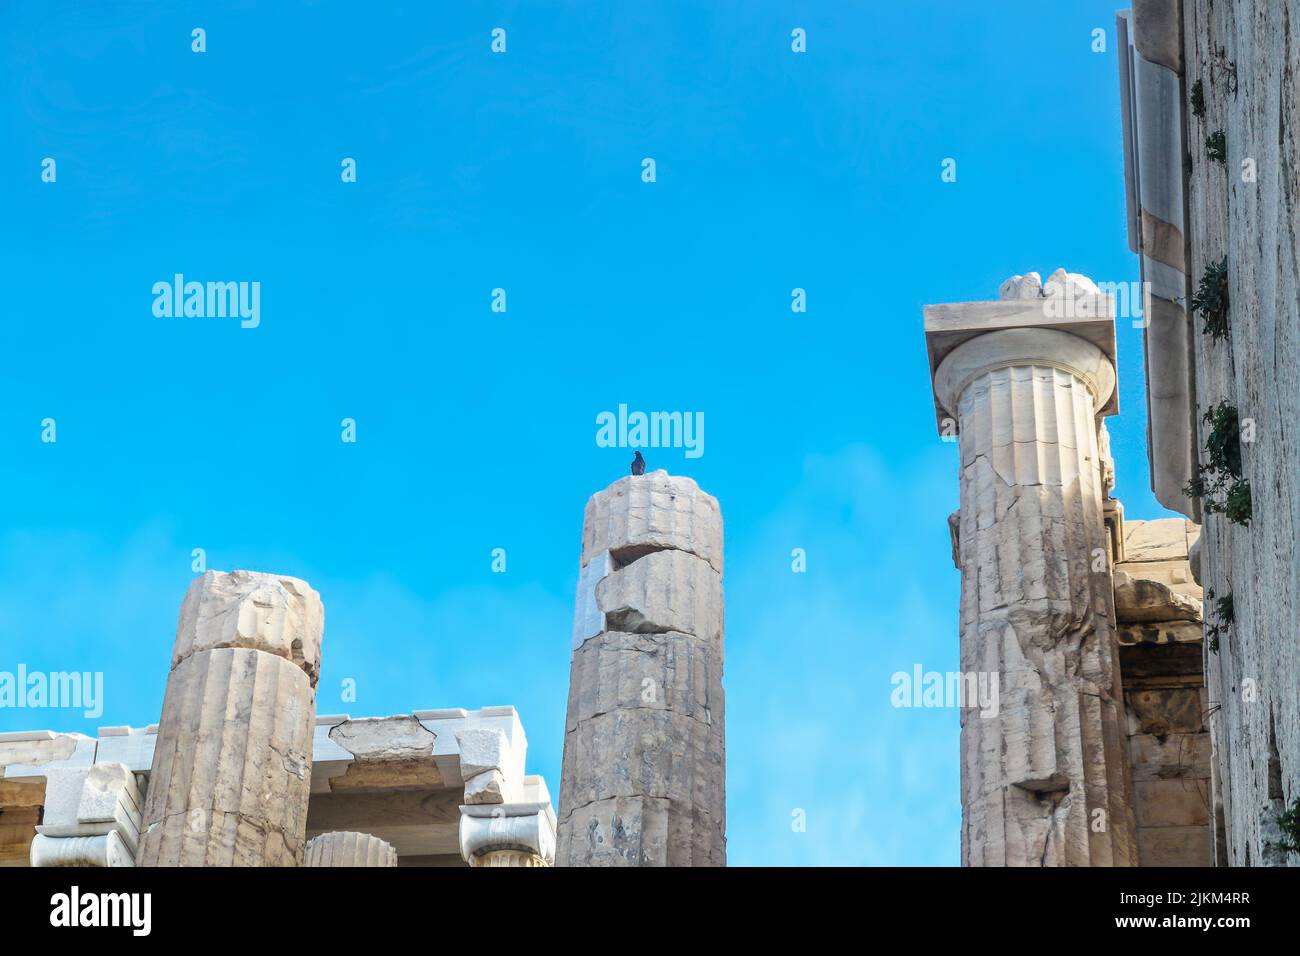 Nahaufnahme der rekonstruierten Säulen auf der Akropolis in Athen Griechenland mit alten und neuen Teilen passt zusammen - Vogel auf der Säule - Platz für Kopie Stockfoto